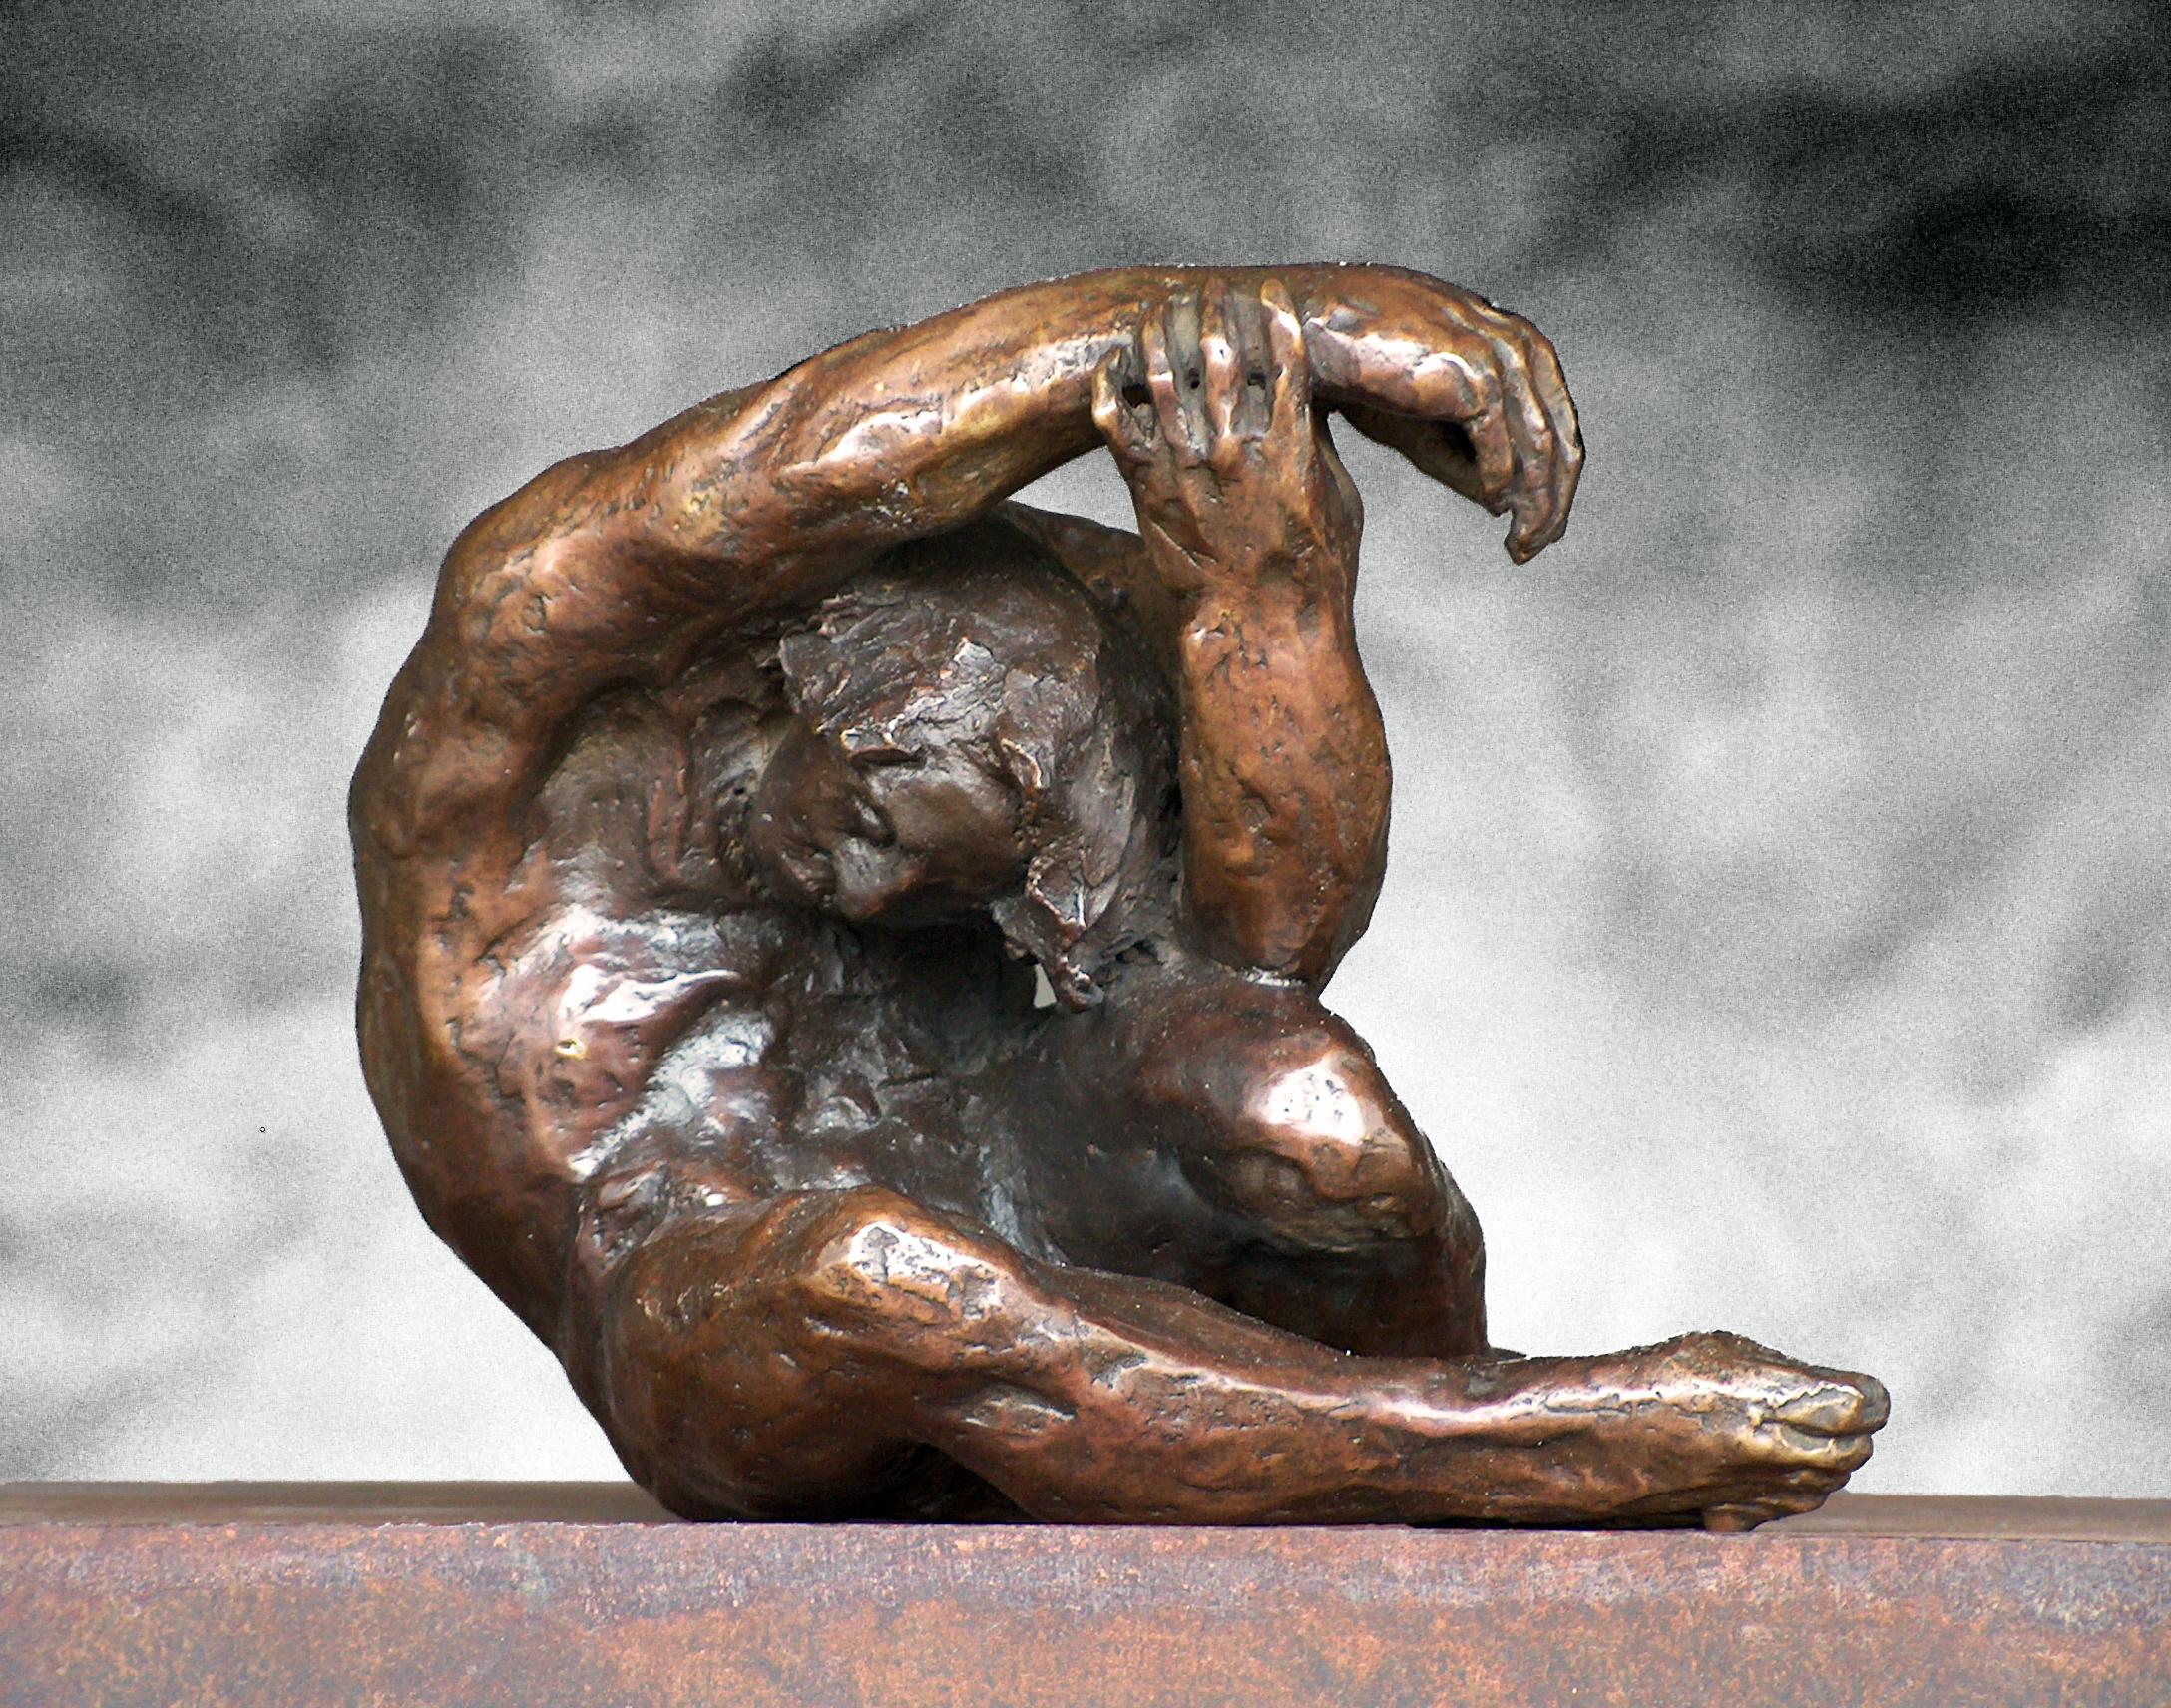 Sculpture de l'artiste espagnol AMANCIO GONZALEZ
Artistics bien connu pour ses œuvres de grand format dans la rue.
Fer et bronze. 
AMANCIO Gonzalez ( Leon 1965 )

Amancio González est un sculpteur de Léon et un artiste de renommée